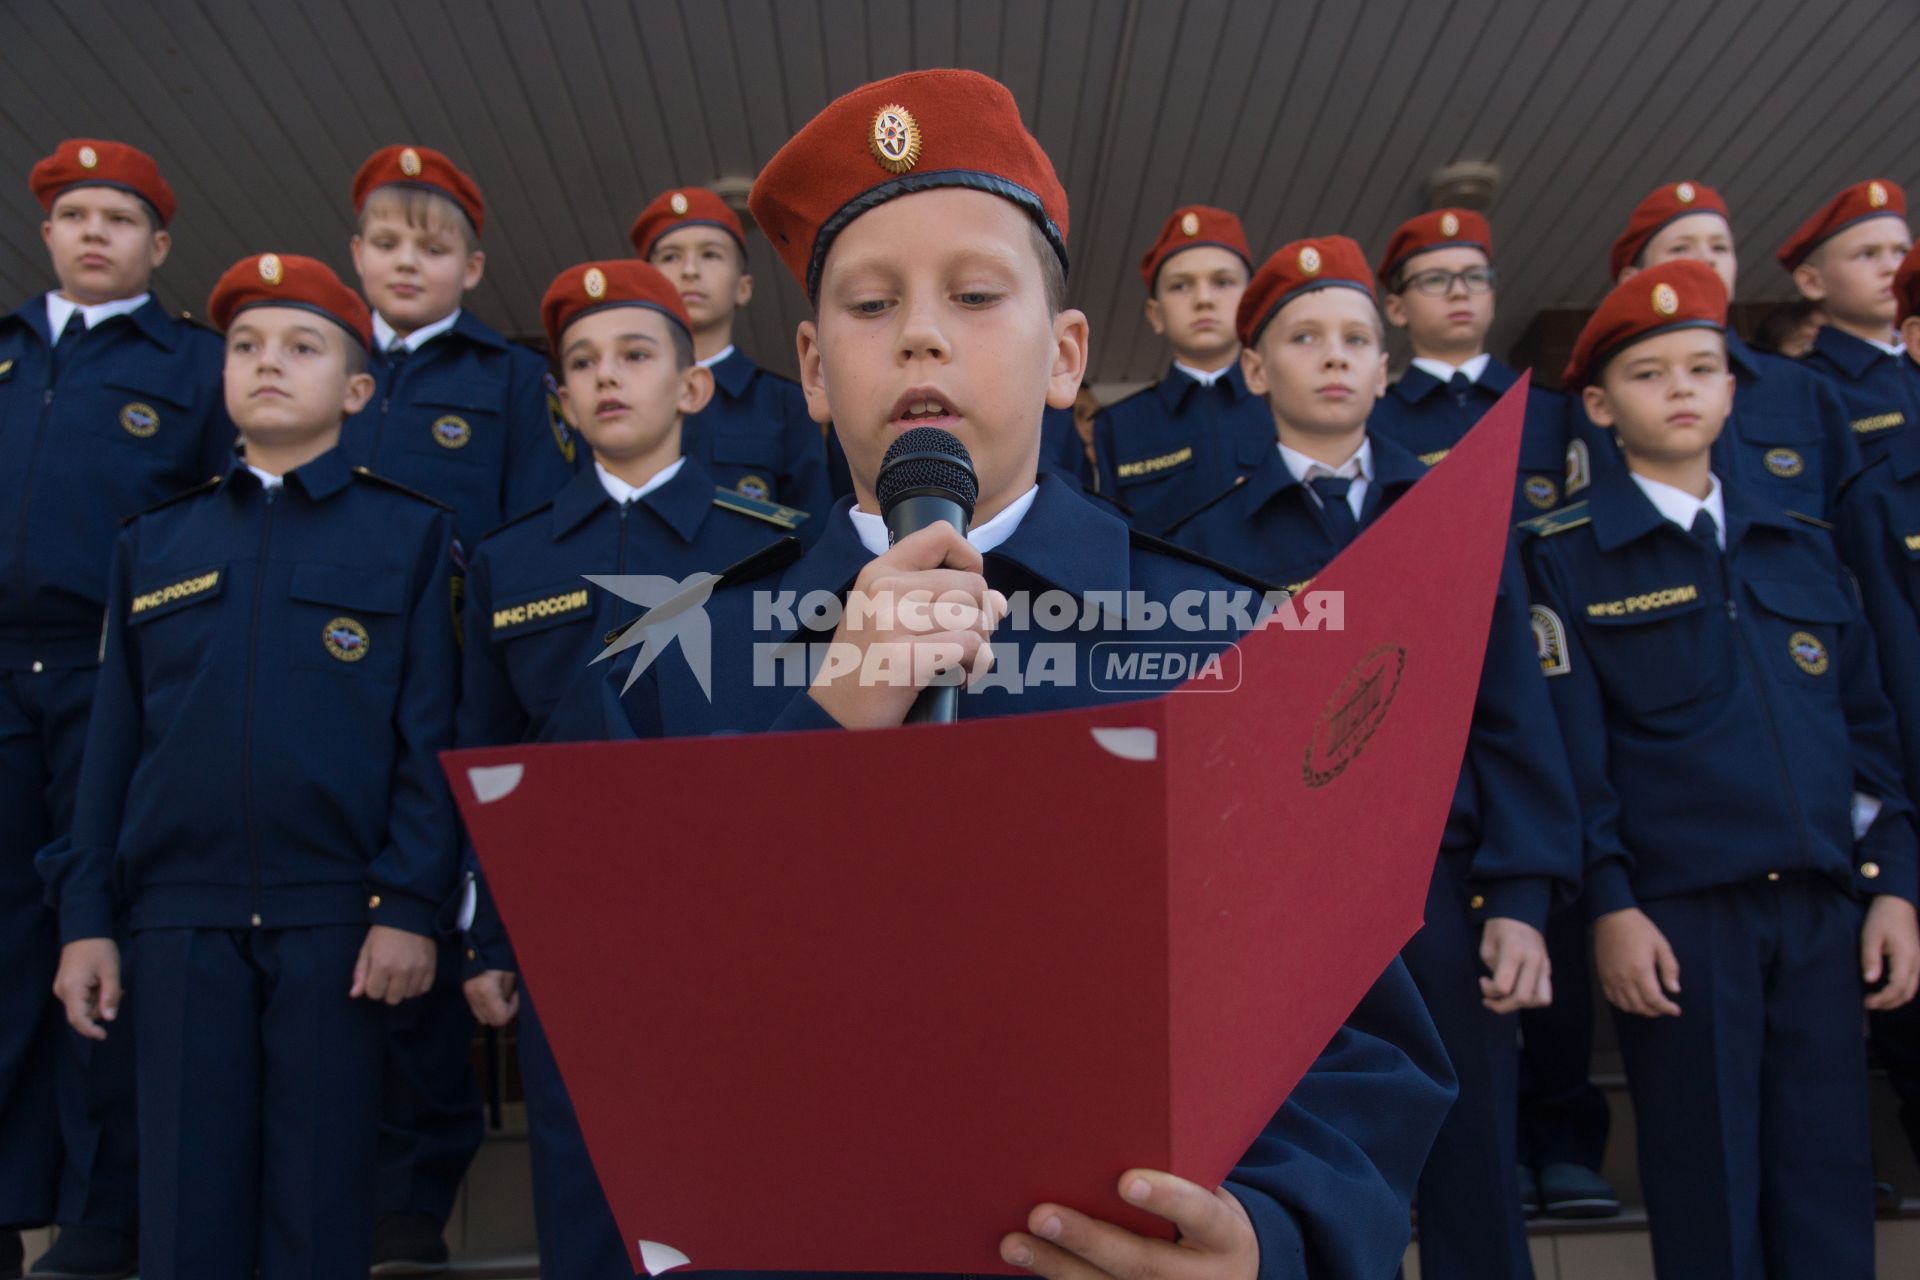 Тольятти. Торжественная линейка, посвященная дню знаний в кадетском классе  МЧС одной из школ города.